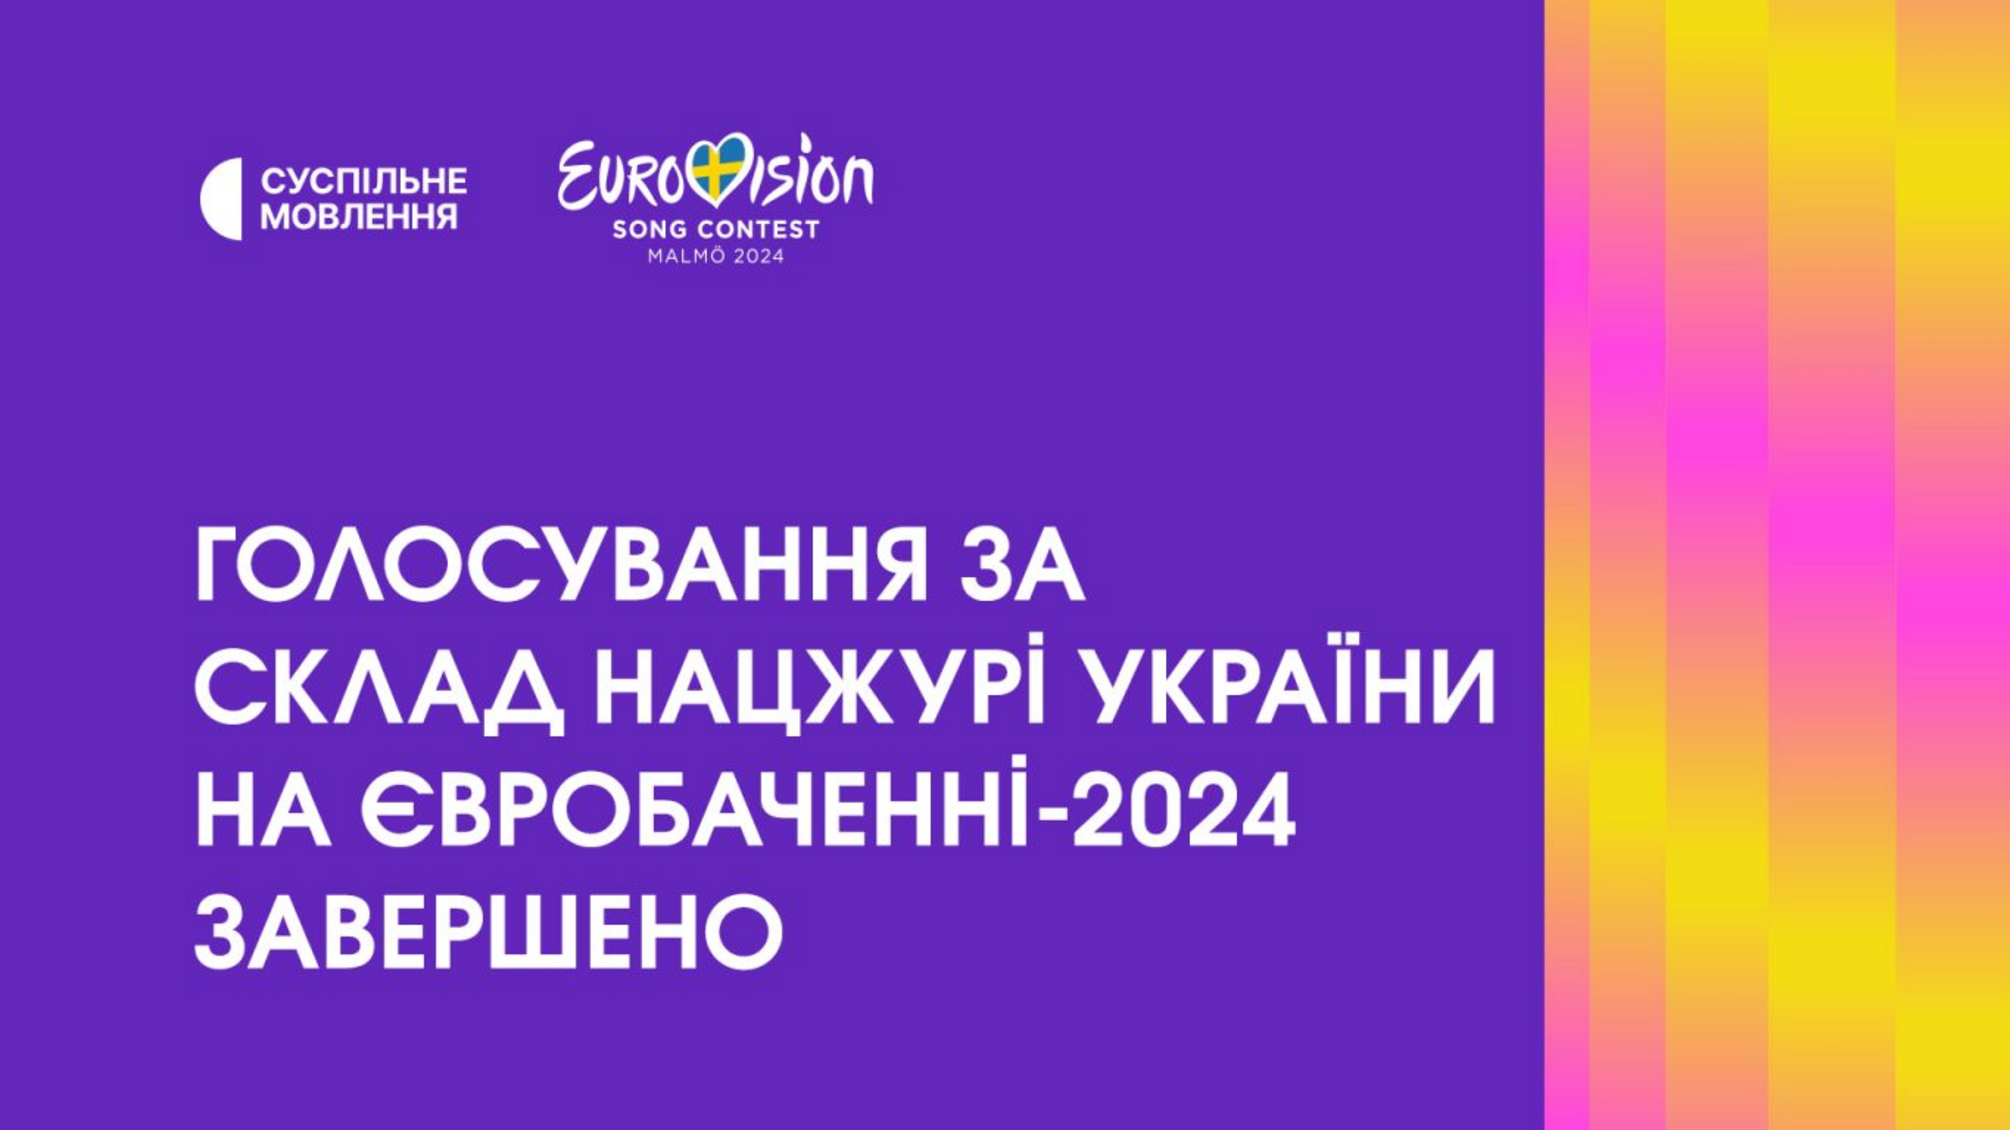 235 тисяч українців віддали свій голос за бажаний склад Національного журі на Євробаченні-2024